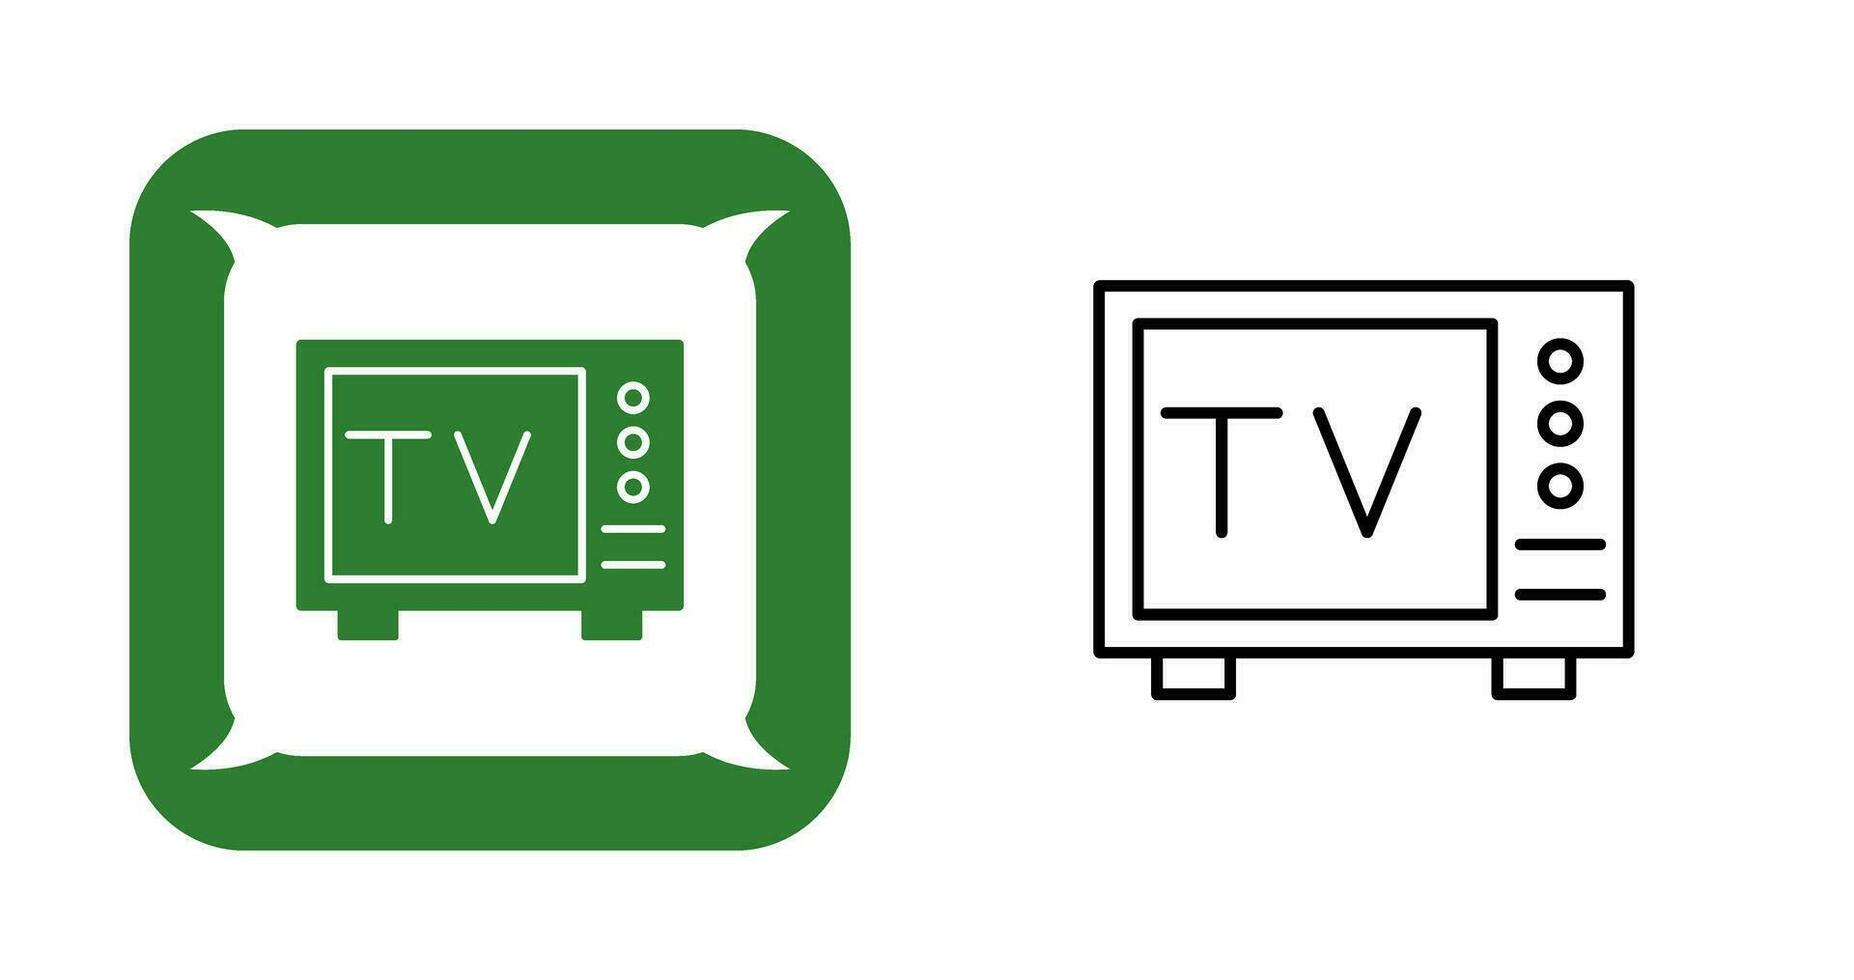 Tv Vector Icon